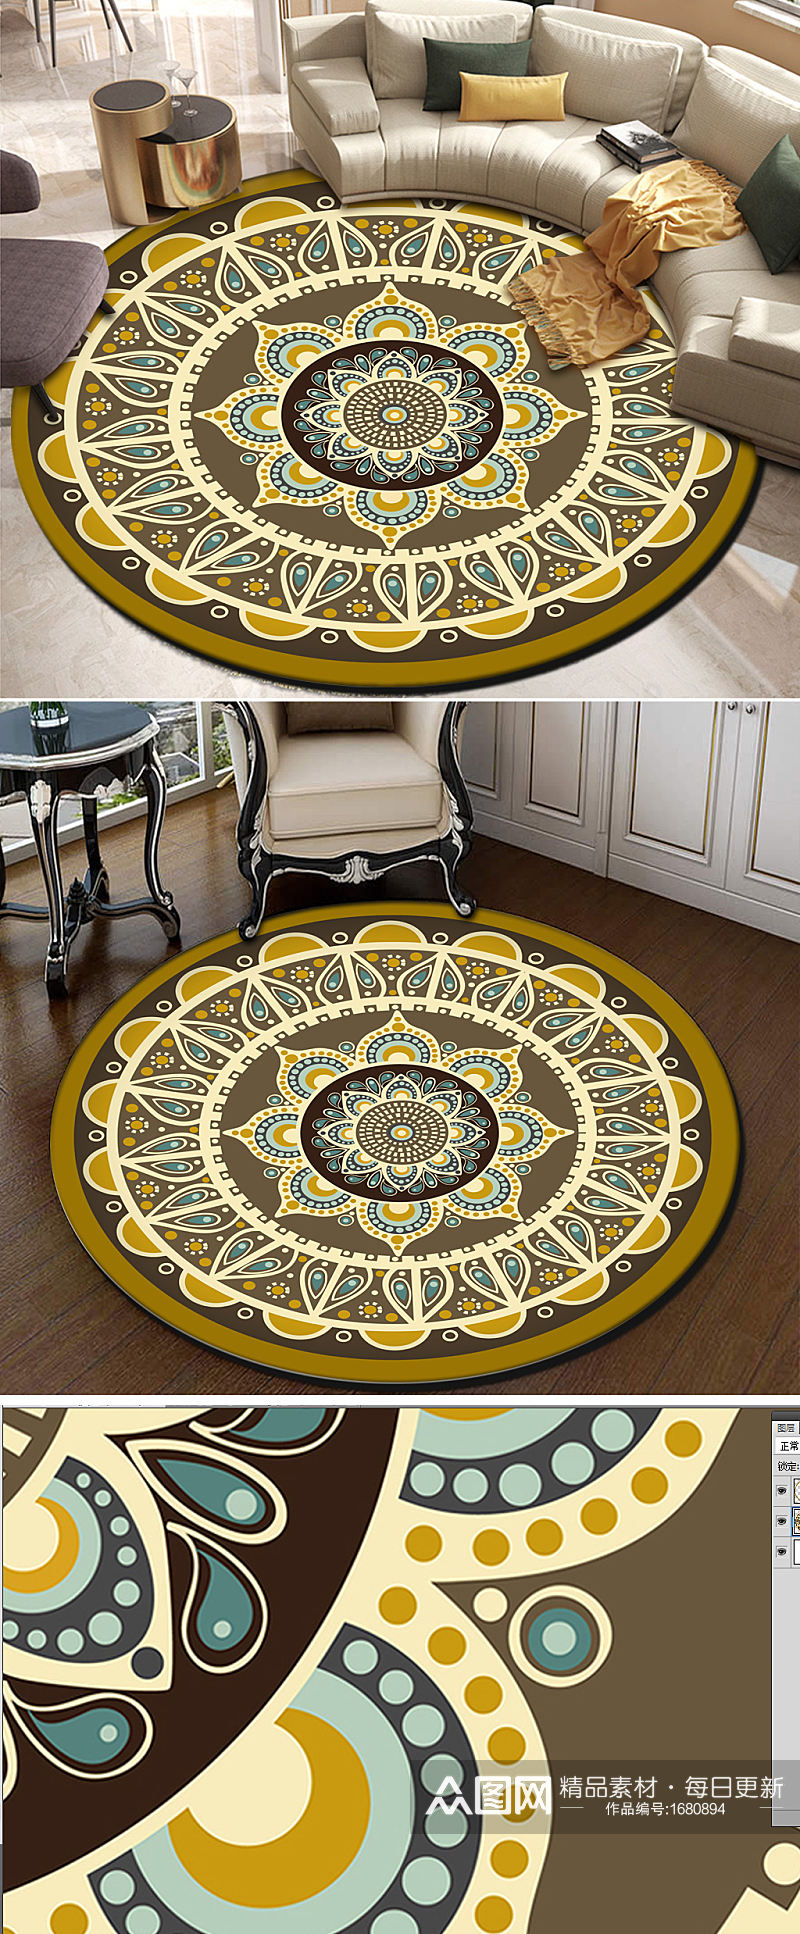 欧式现代简约古典花纹奢华圆形地毯素材